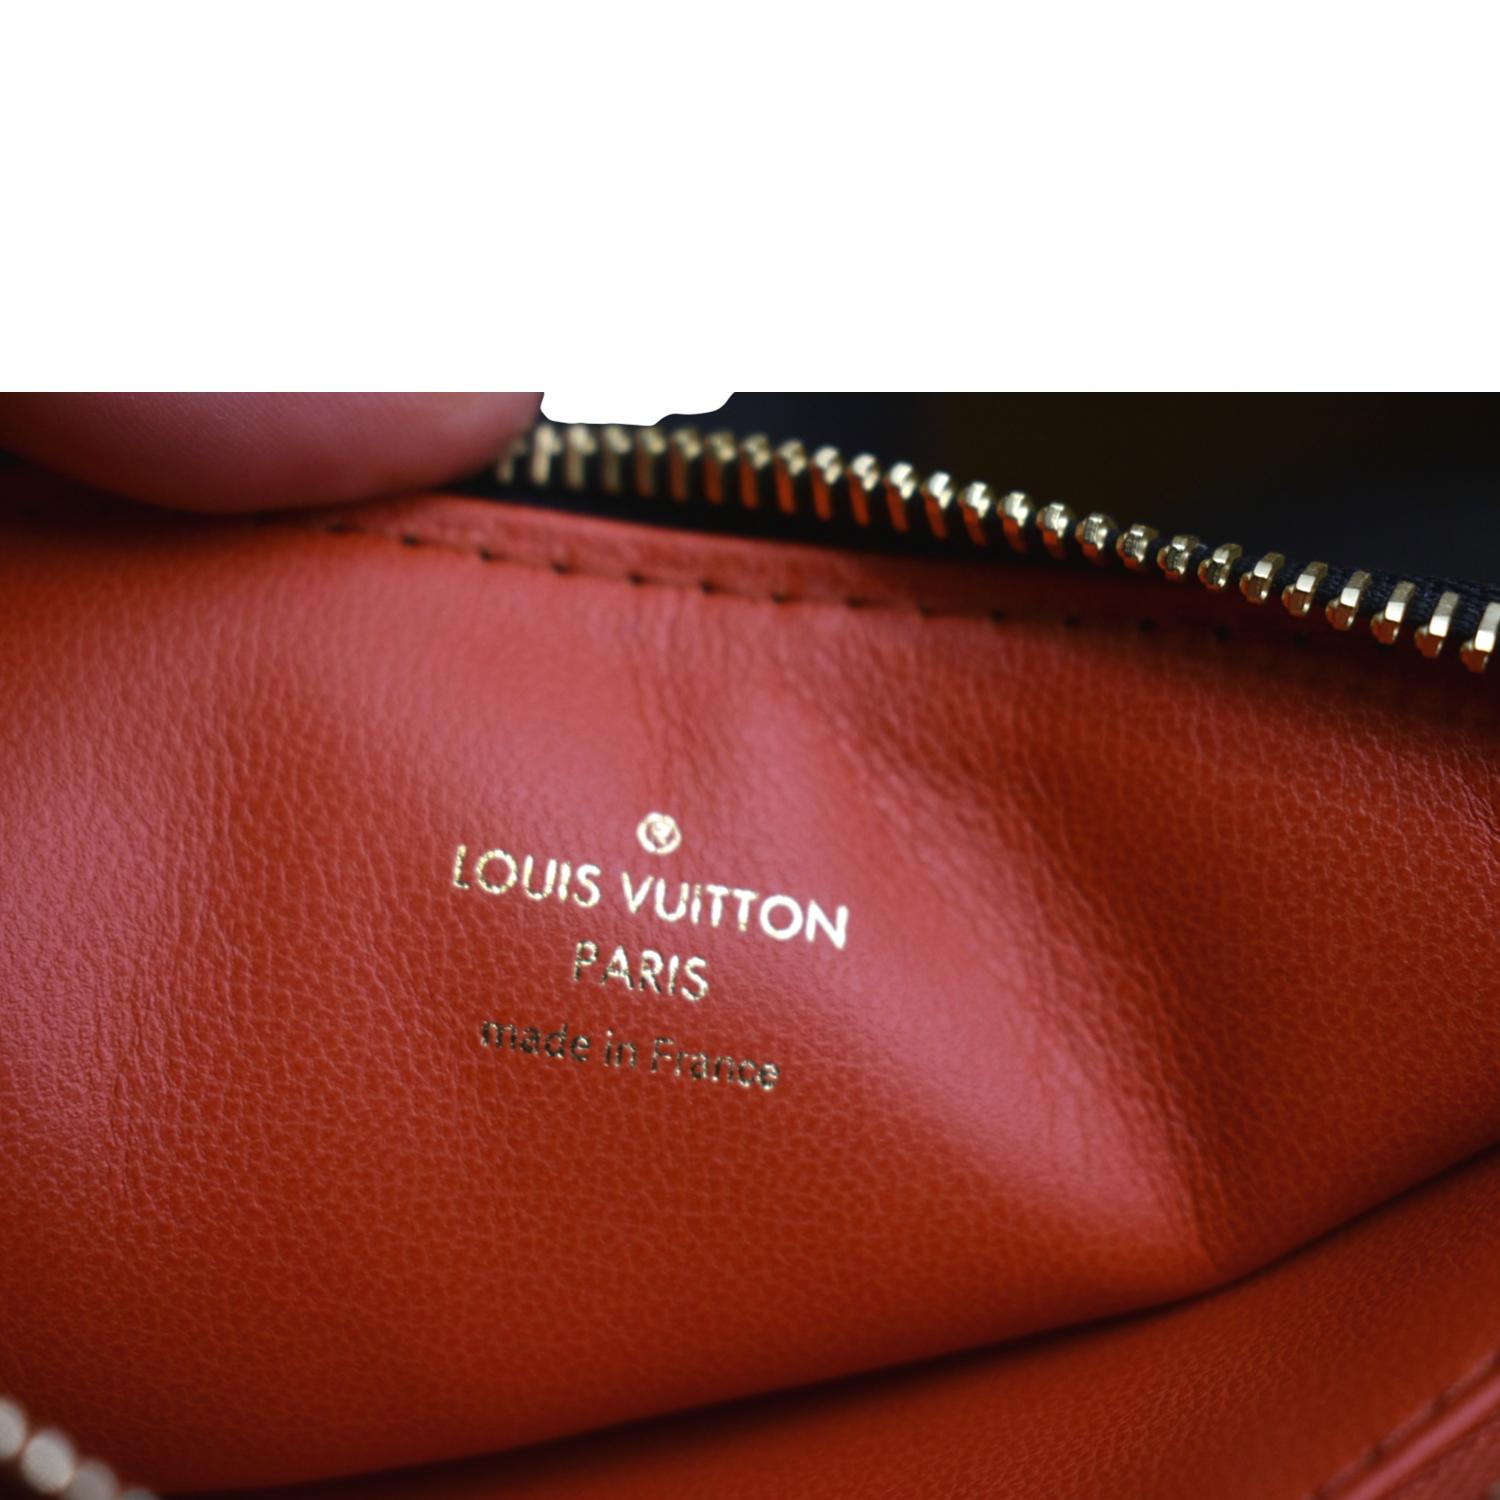 Louis Vuitton Coussin Bb